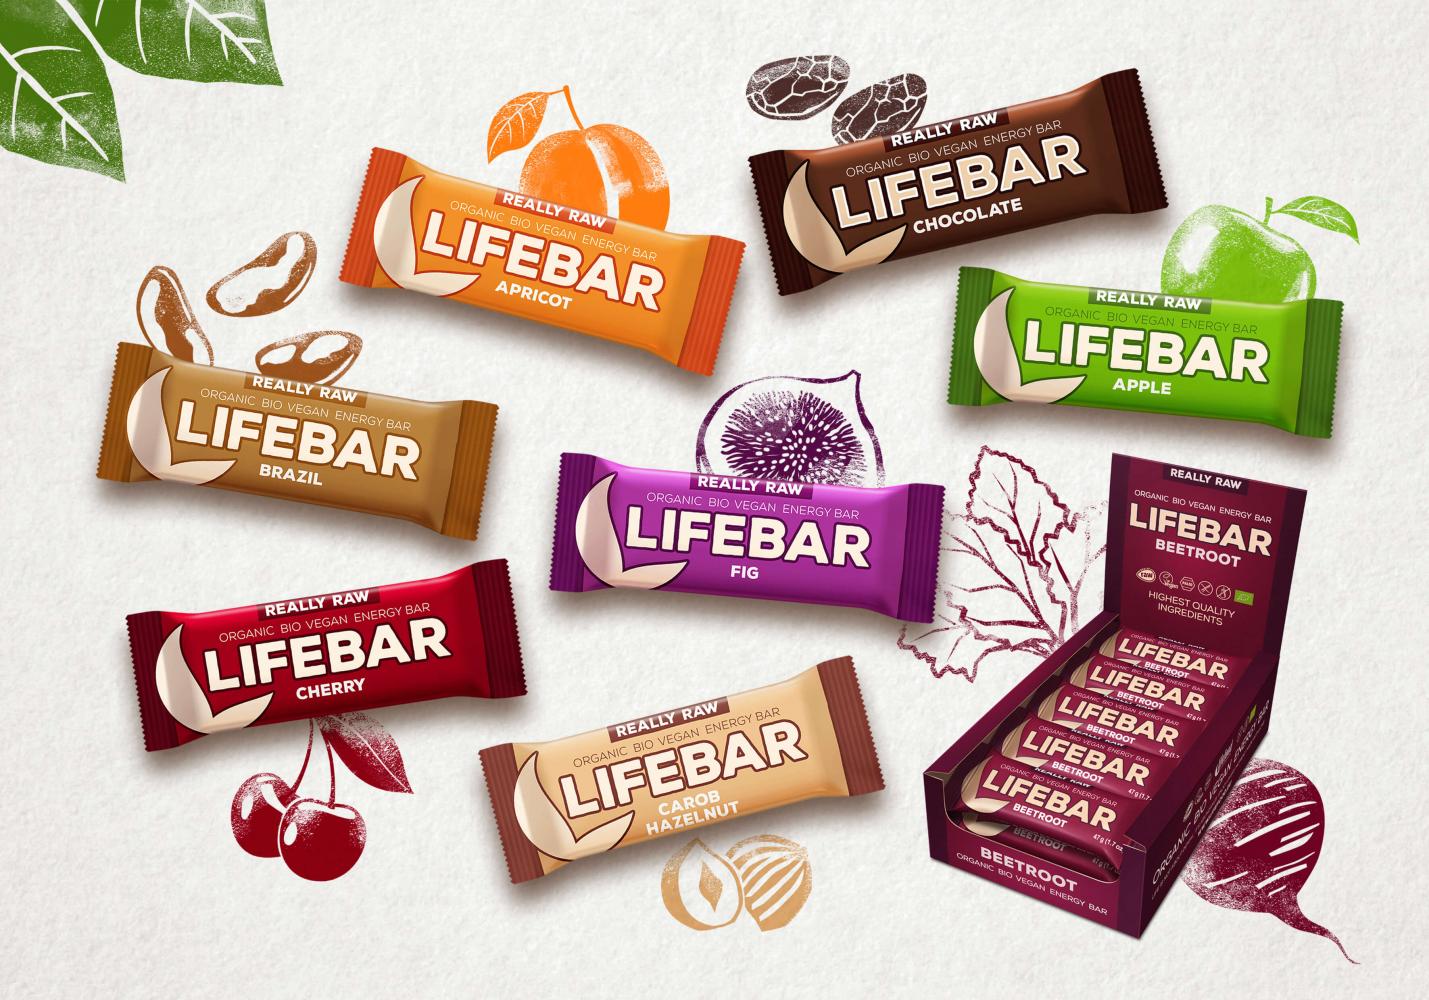 Les LIFEBARS sont des barres énergétiques crues, 100% vegan, bio et sans gluten. Uniquement à base de fruits secs, sans sucre ajouté. 